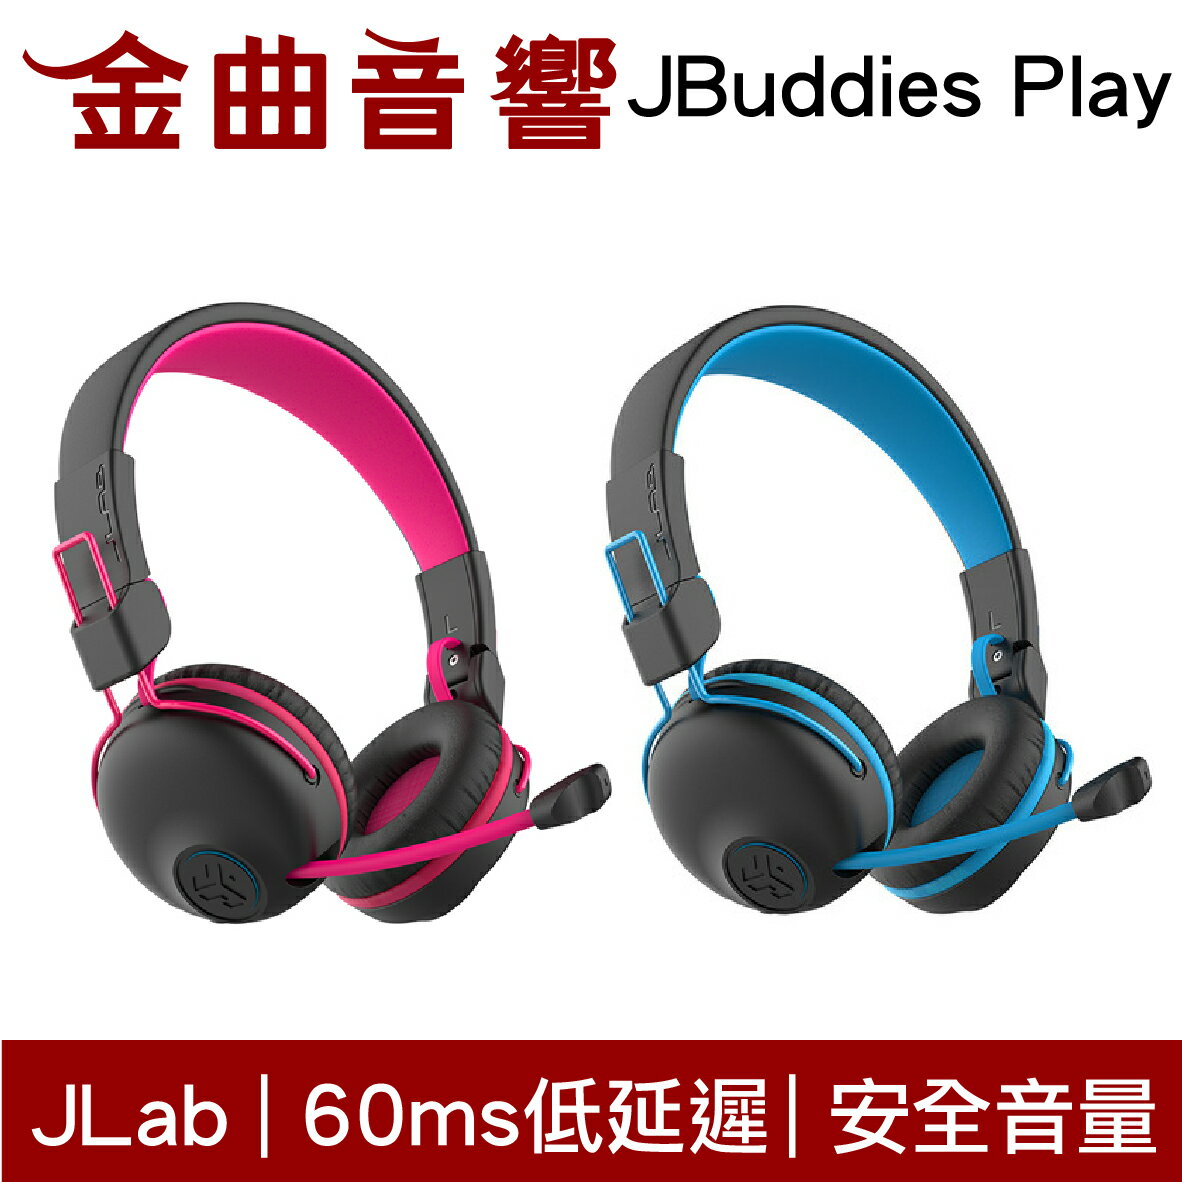 JLAB JBuddies Play 無線 藍芽 電競 兒童耳機 大人 皆適用 耳罩式 耳機 | 金曲音響